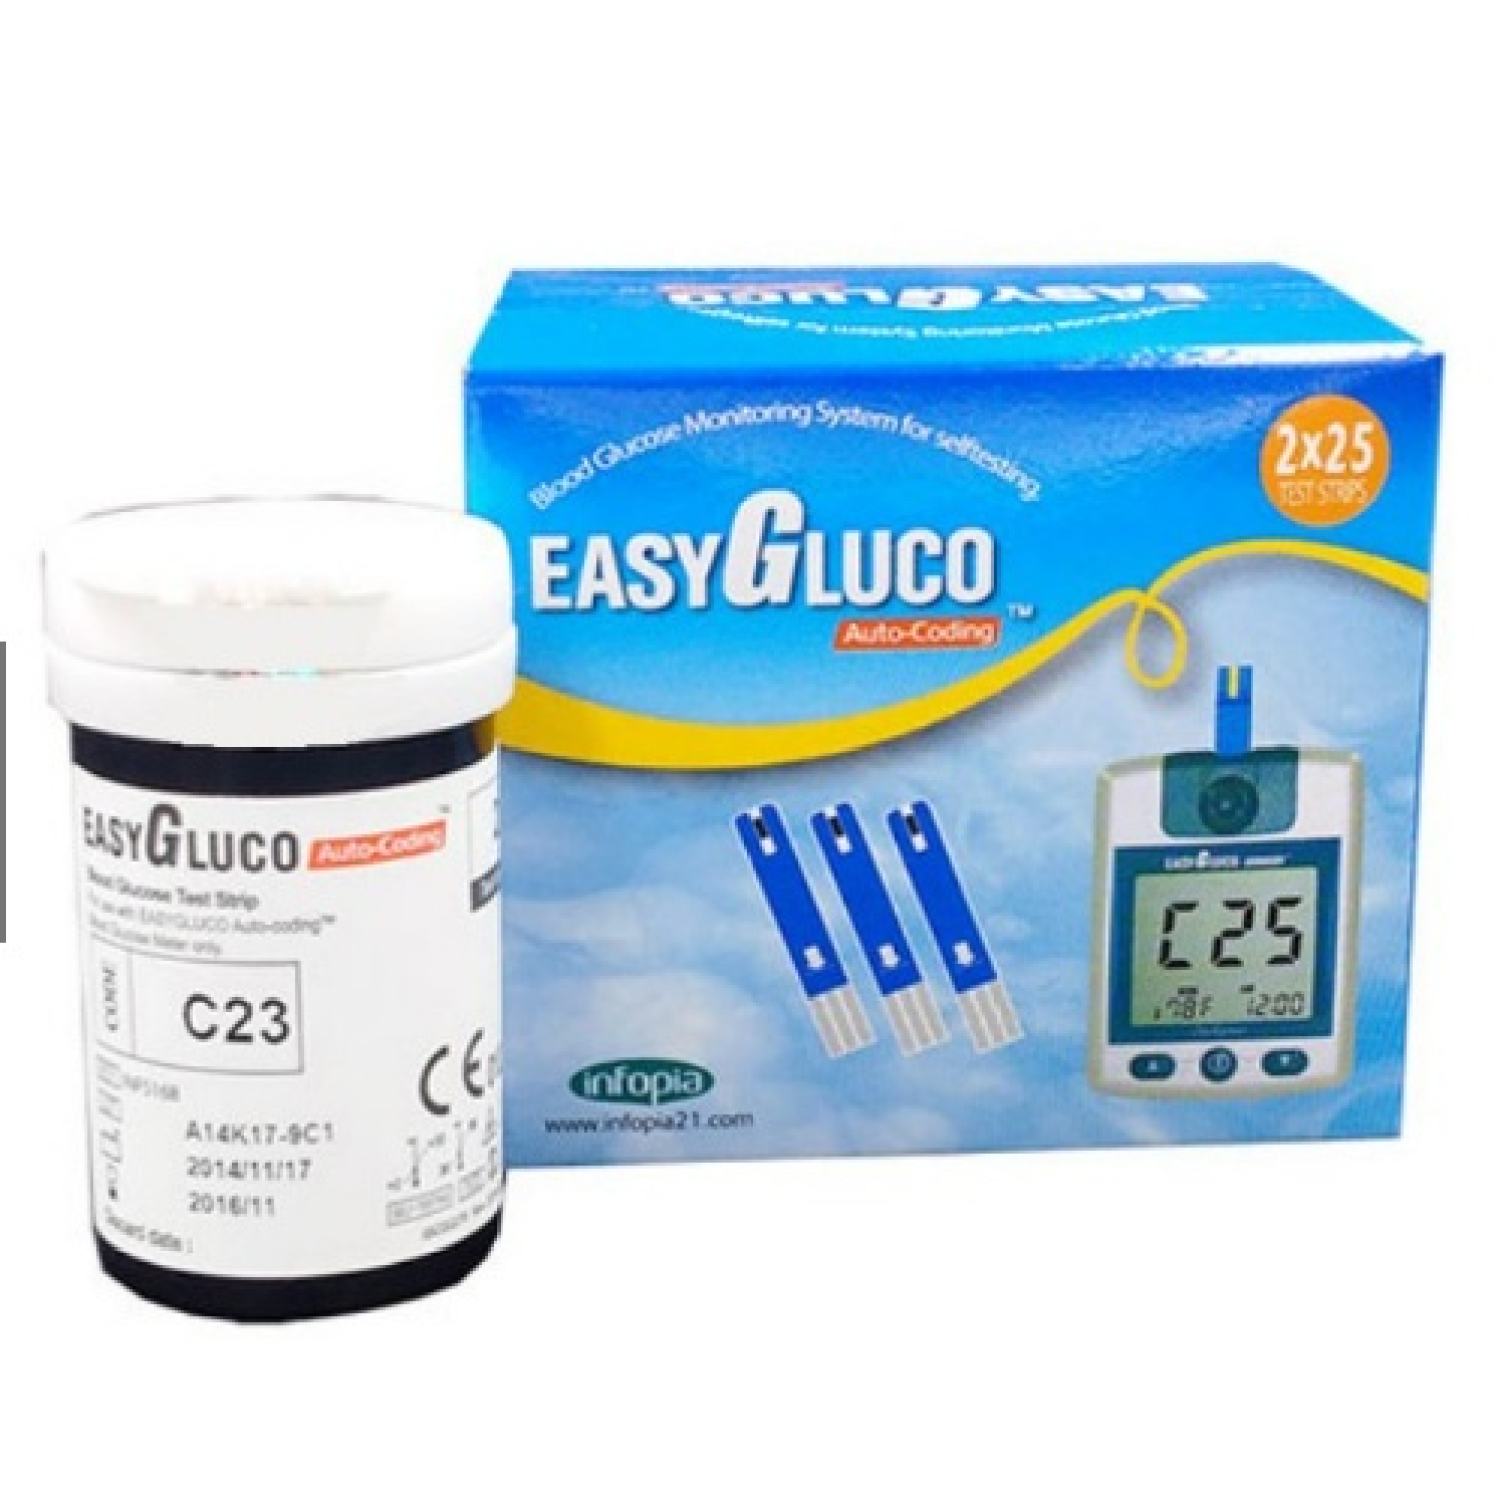 EASYGLUCO 25 QUE - Que thử đường huyết dùng cho máy Easy Gluco Auto-Coding